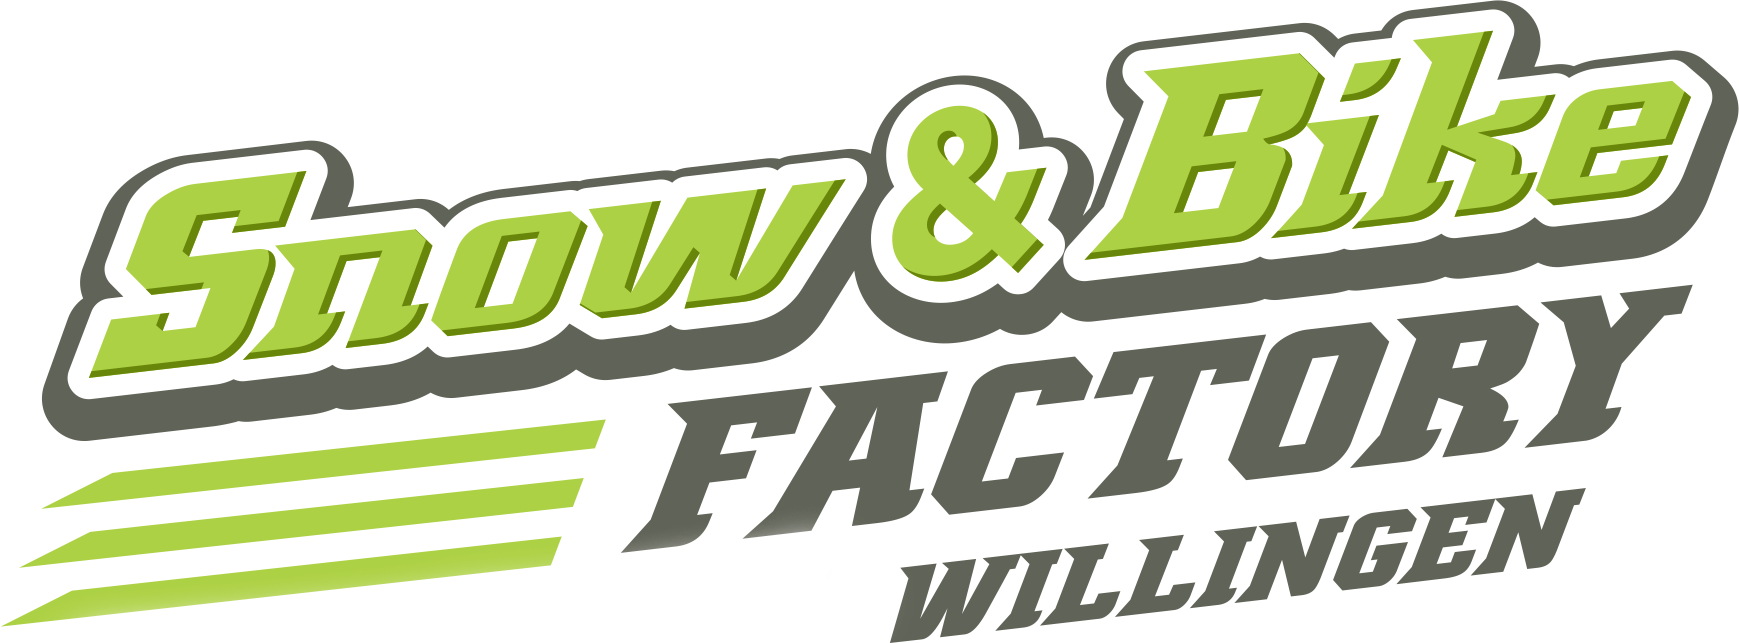 Snow und Bike Factory Willingen Logo